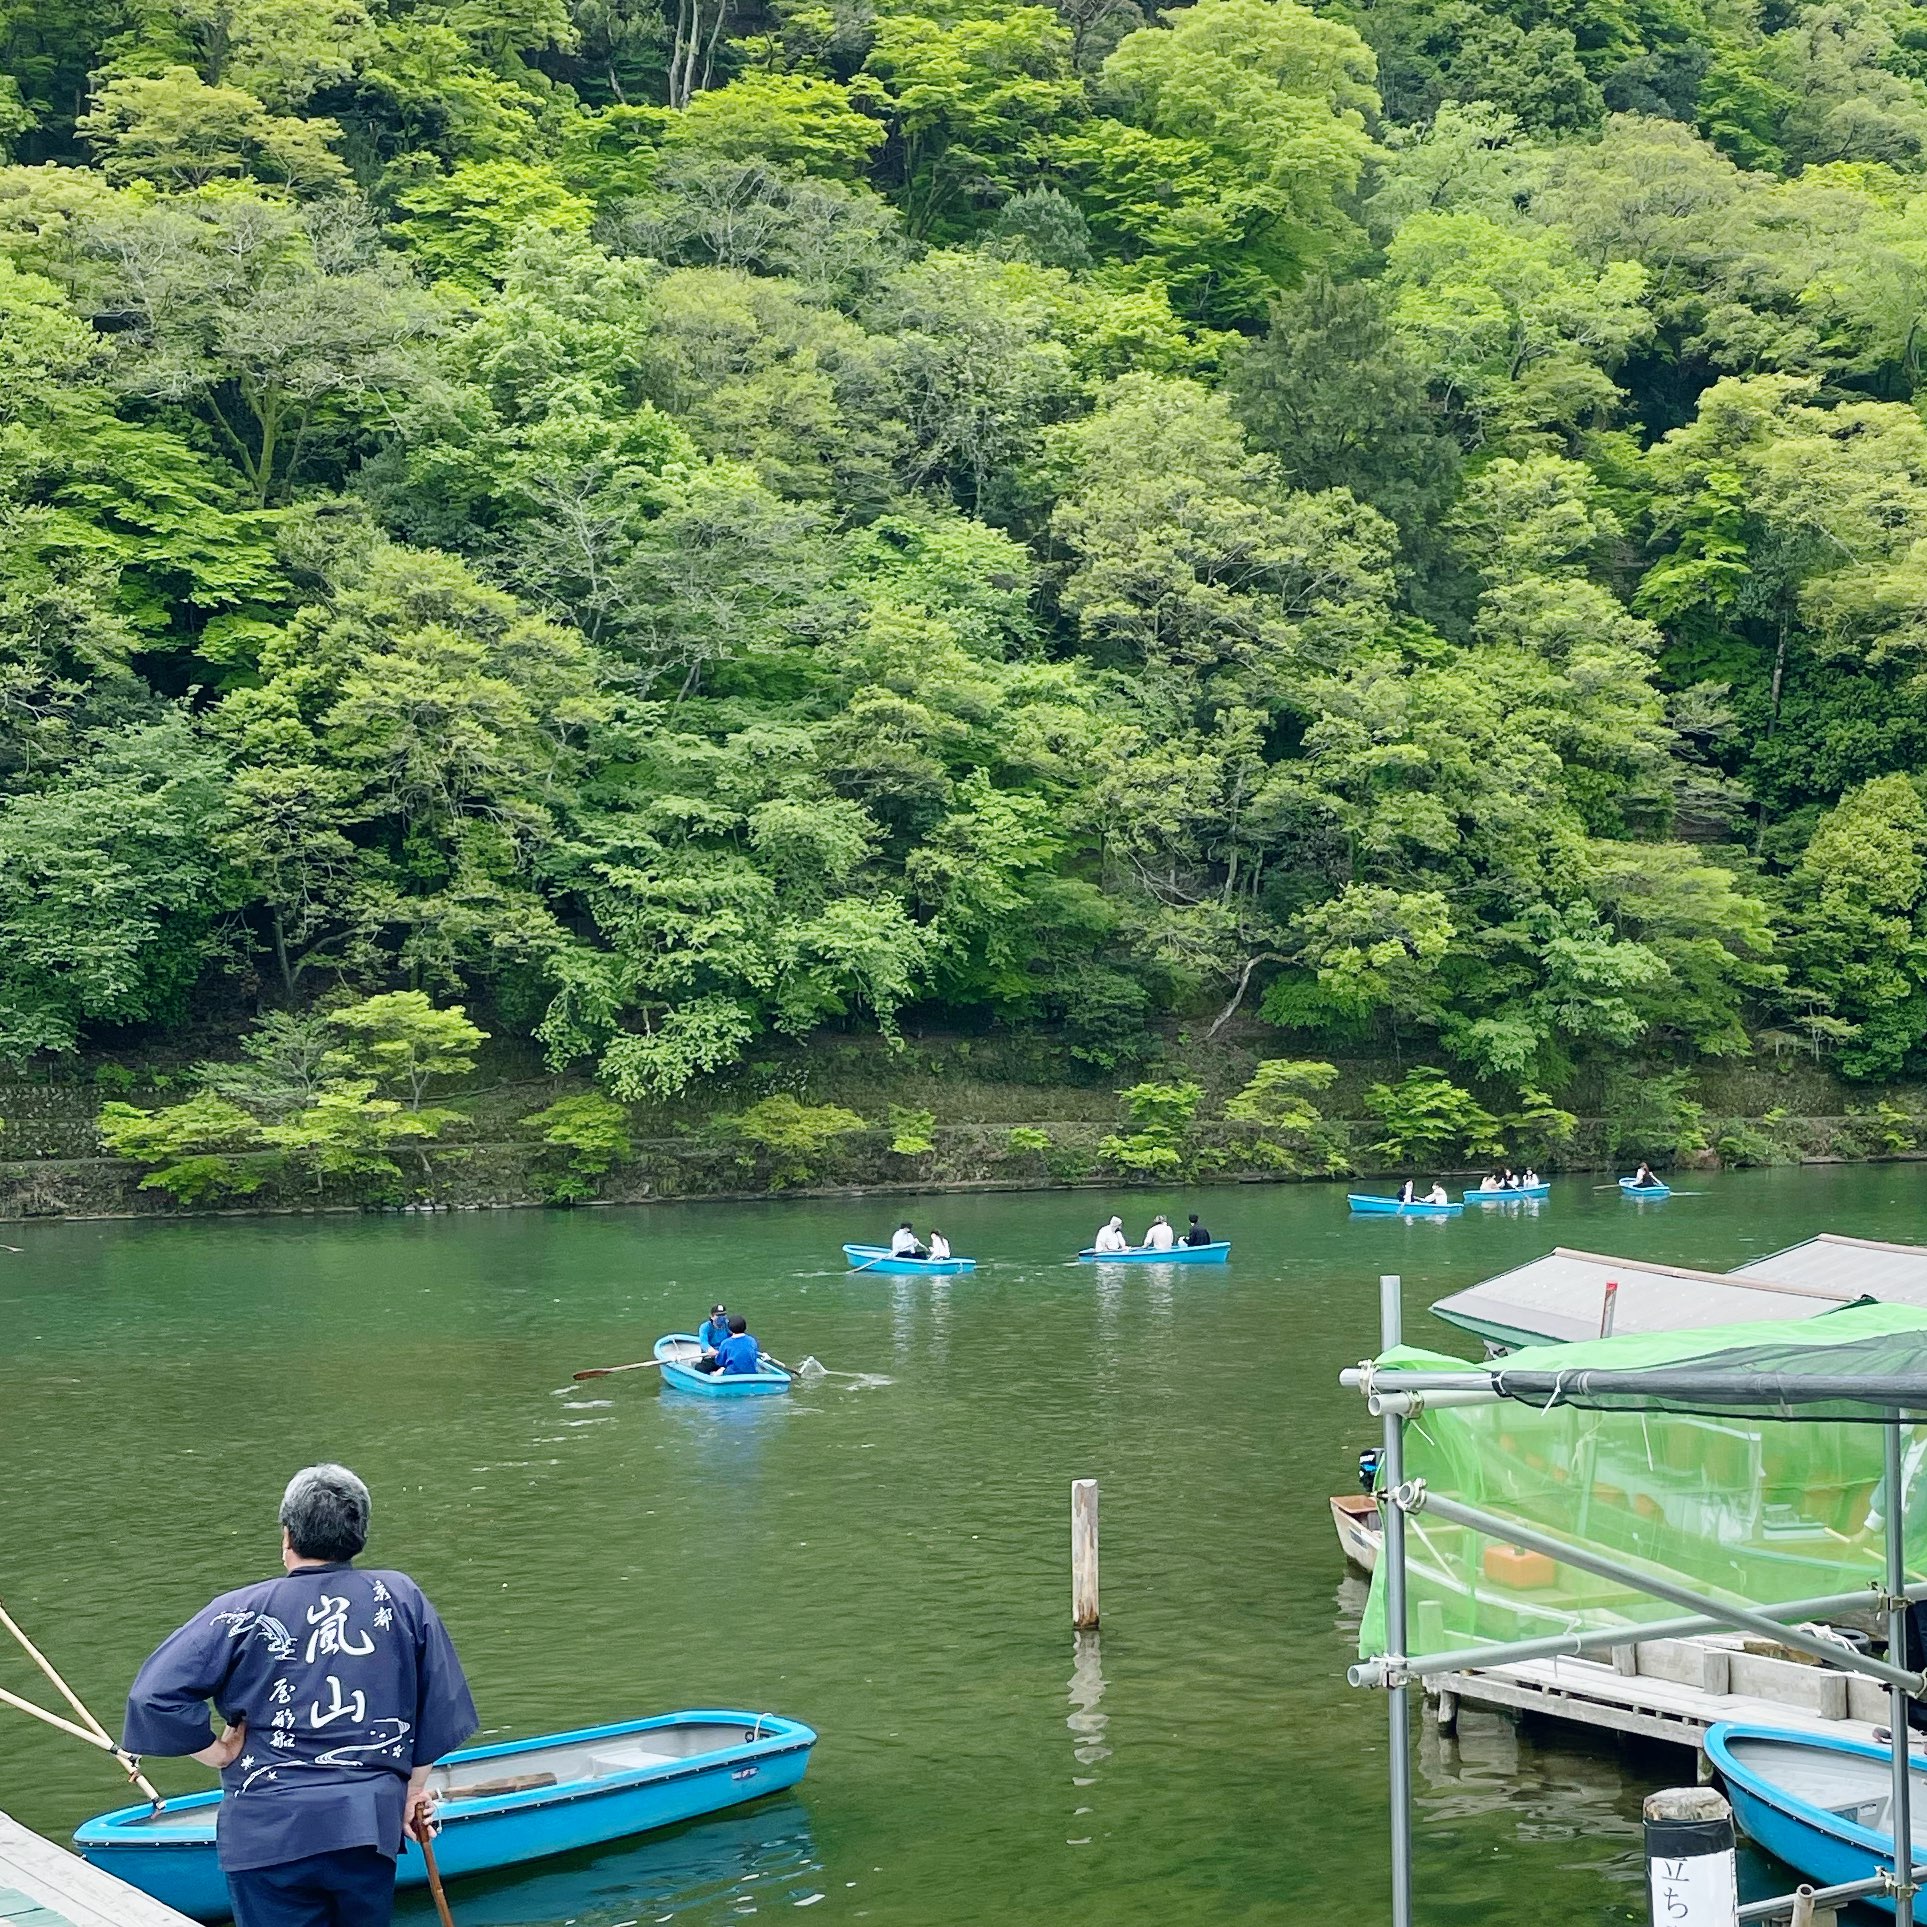 京都 嵐山 手漕ぎ 青いボート Trip Com アジアの旅のブログ